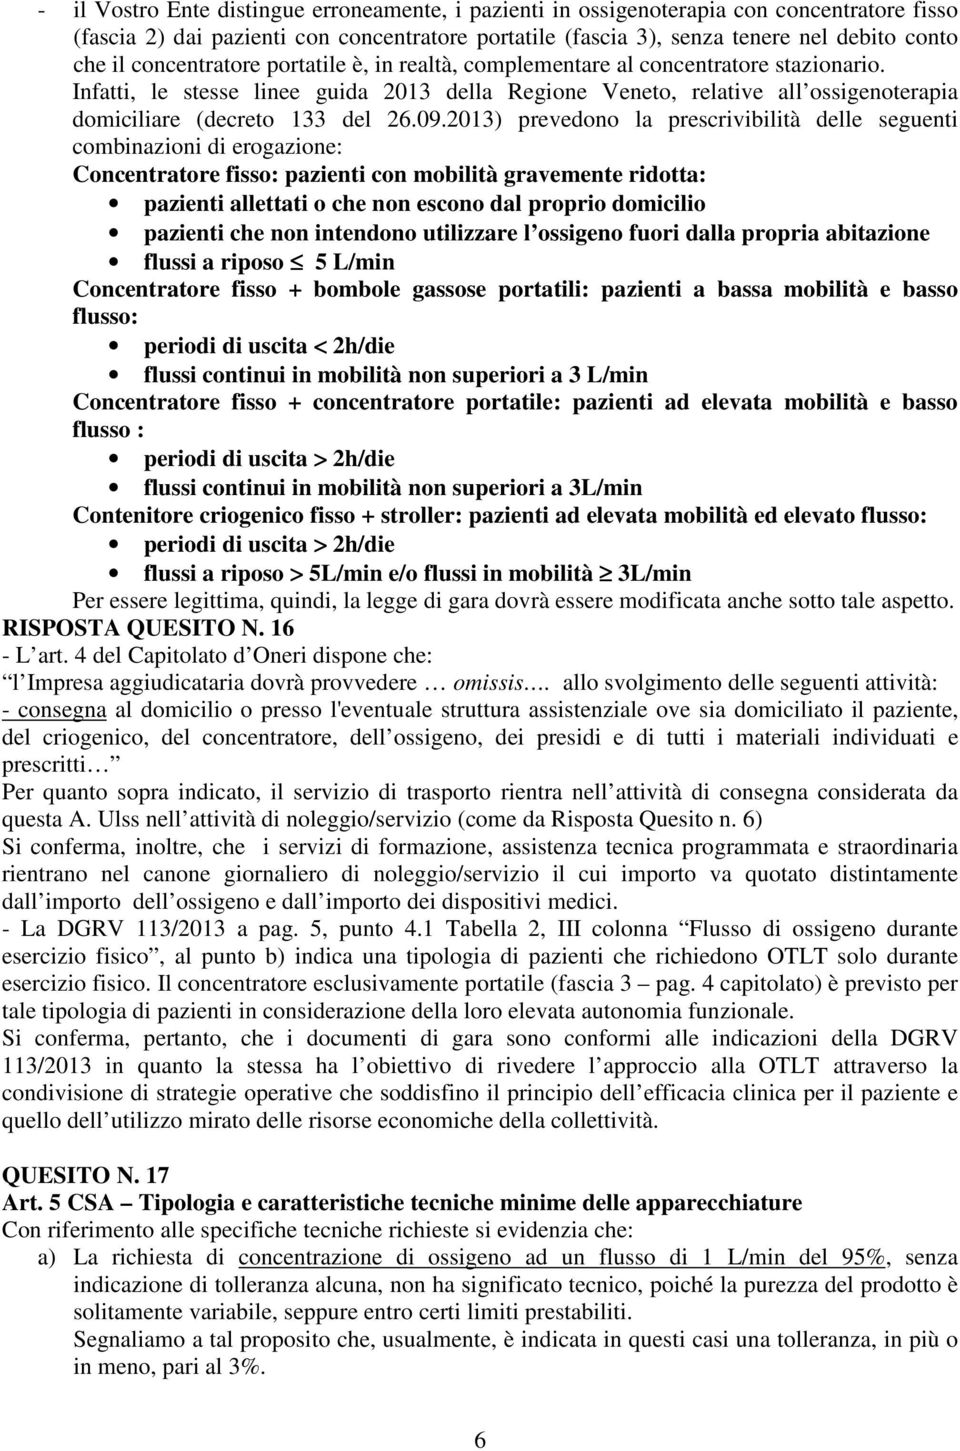 Infatti, le stesse linee guida 2013 della Regione Veneto, relative all ossigenoterapia domiciliare (decreto 133 del 26.09.